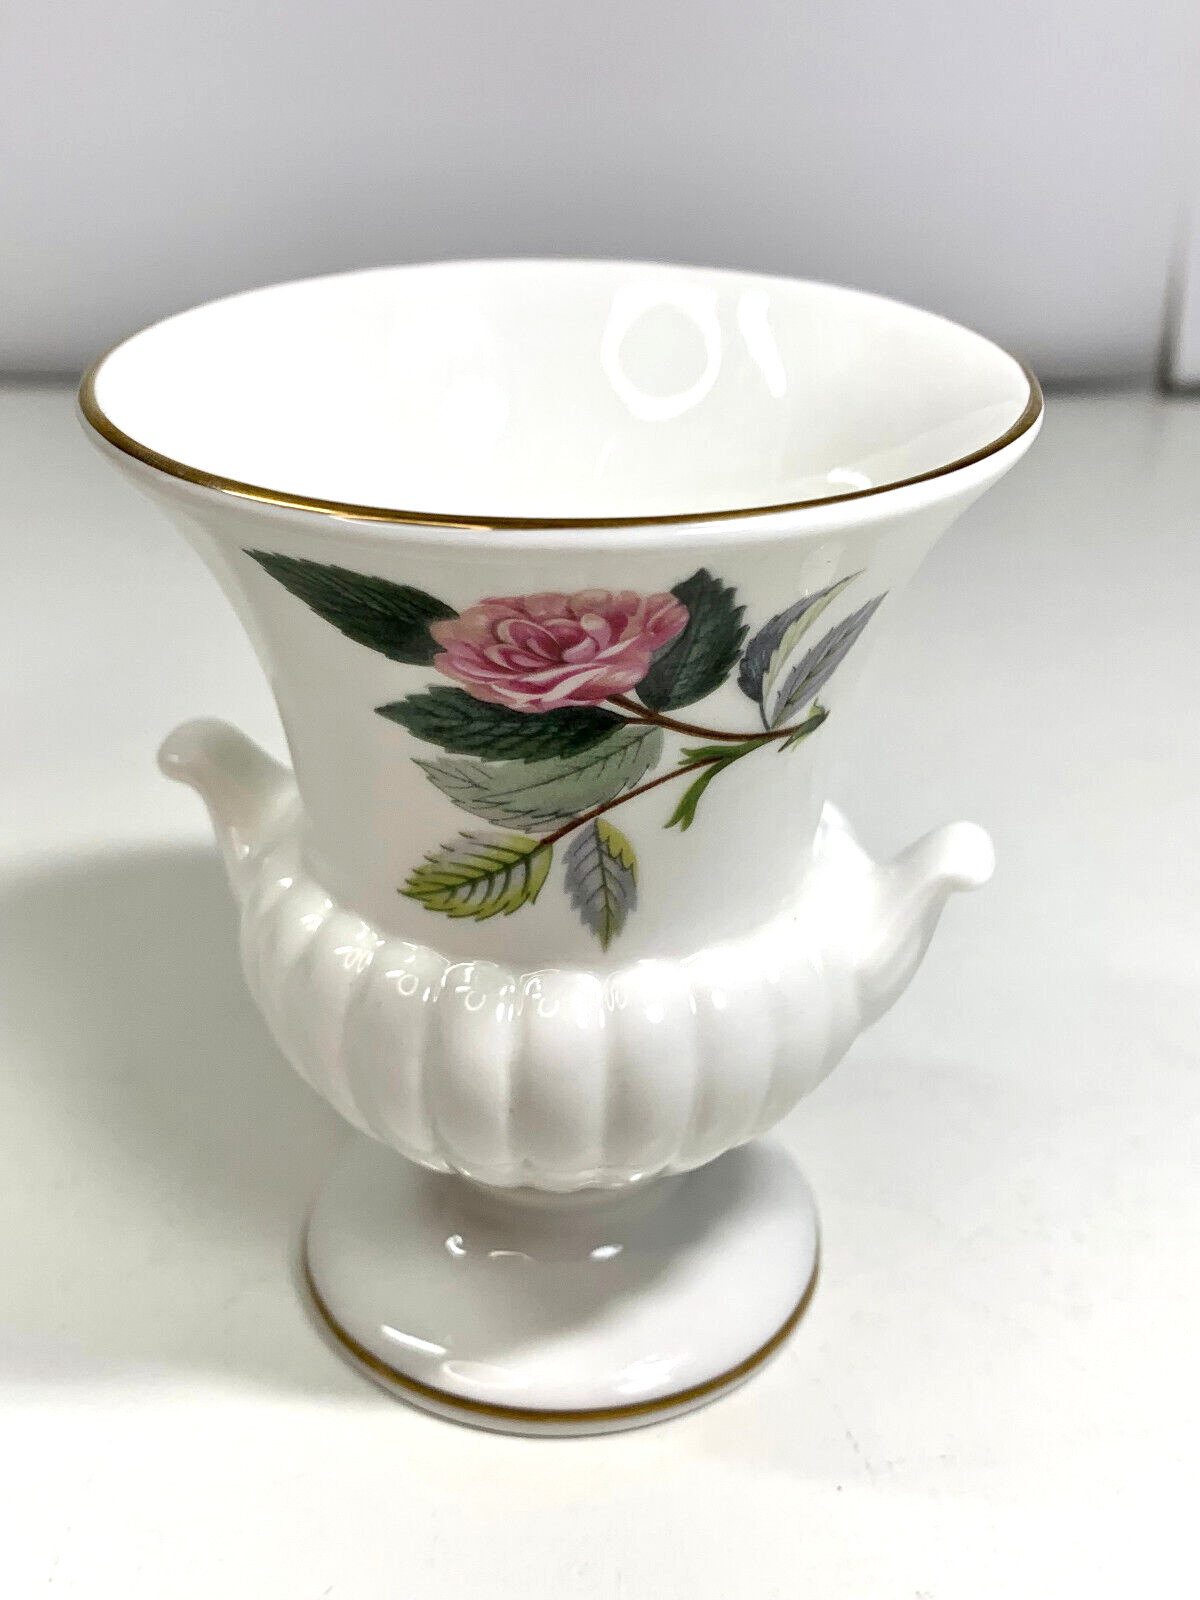 England Vintage Hathaway Rose Wedgwood Miniature Urn Bud Vase Bone China